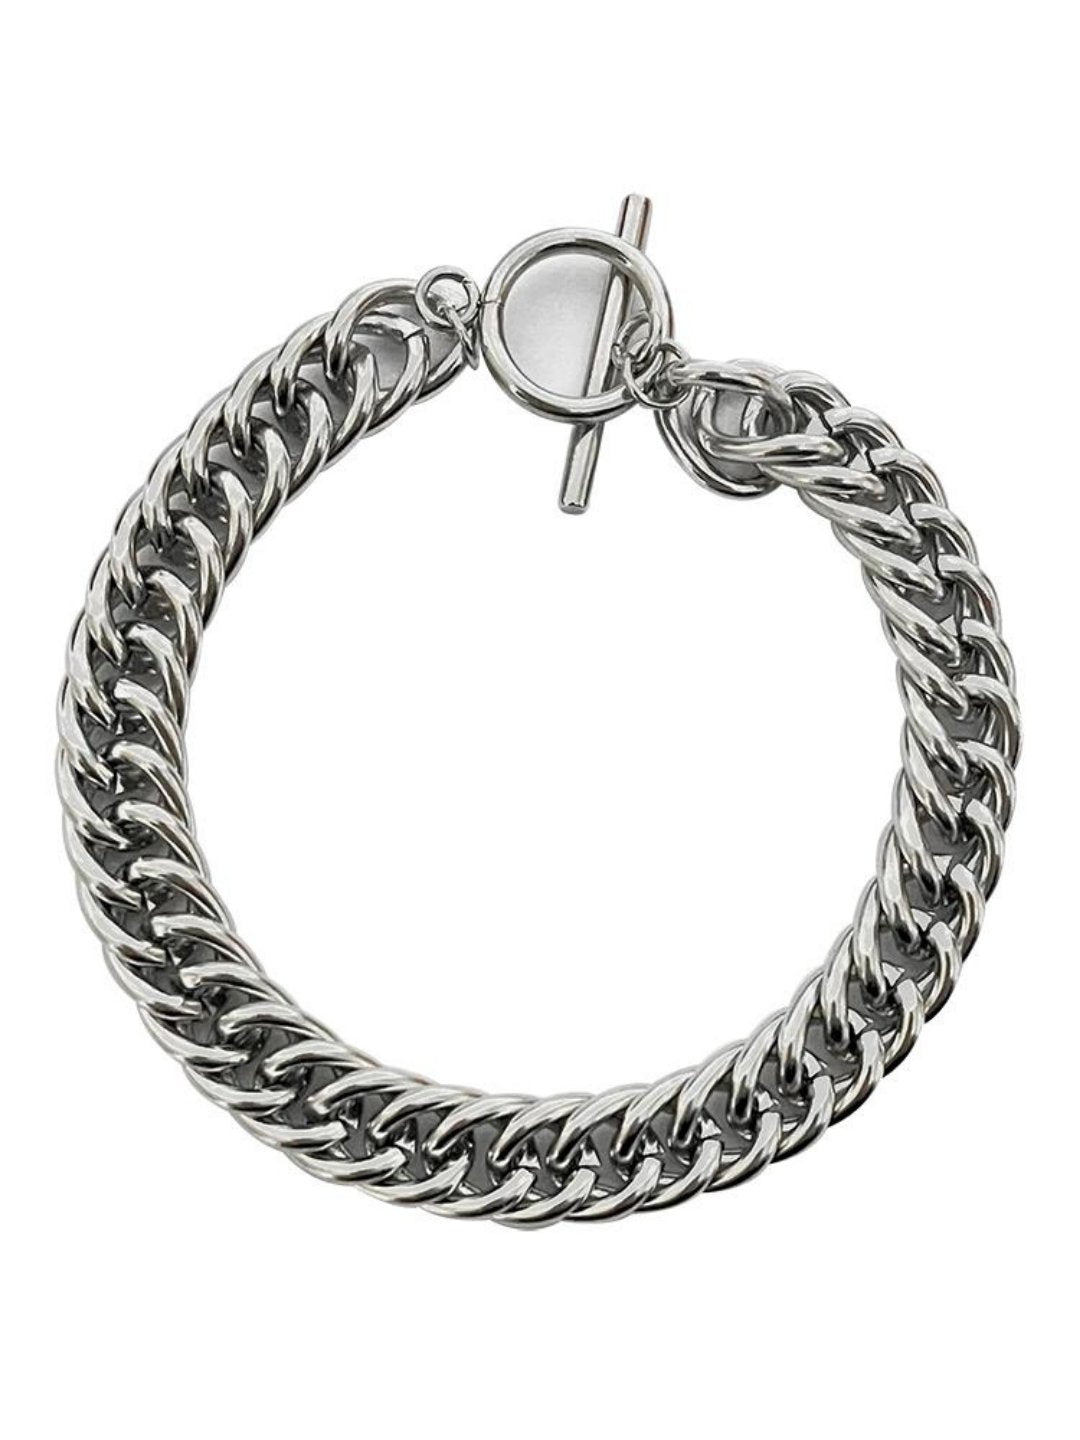 Silver bracelet ax32 - AXES